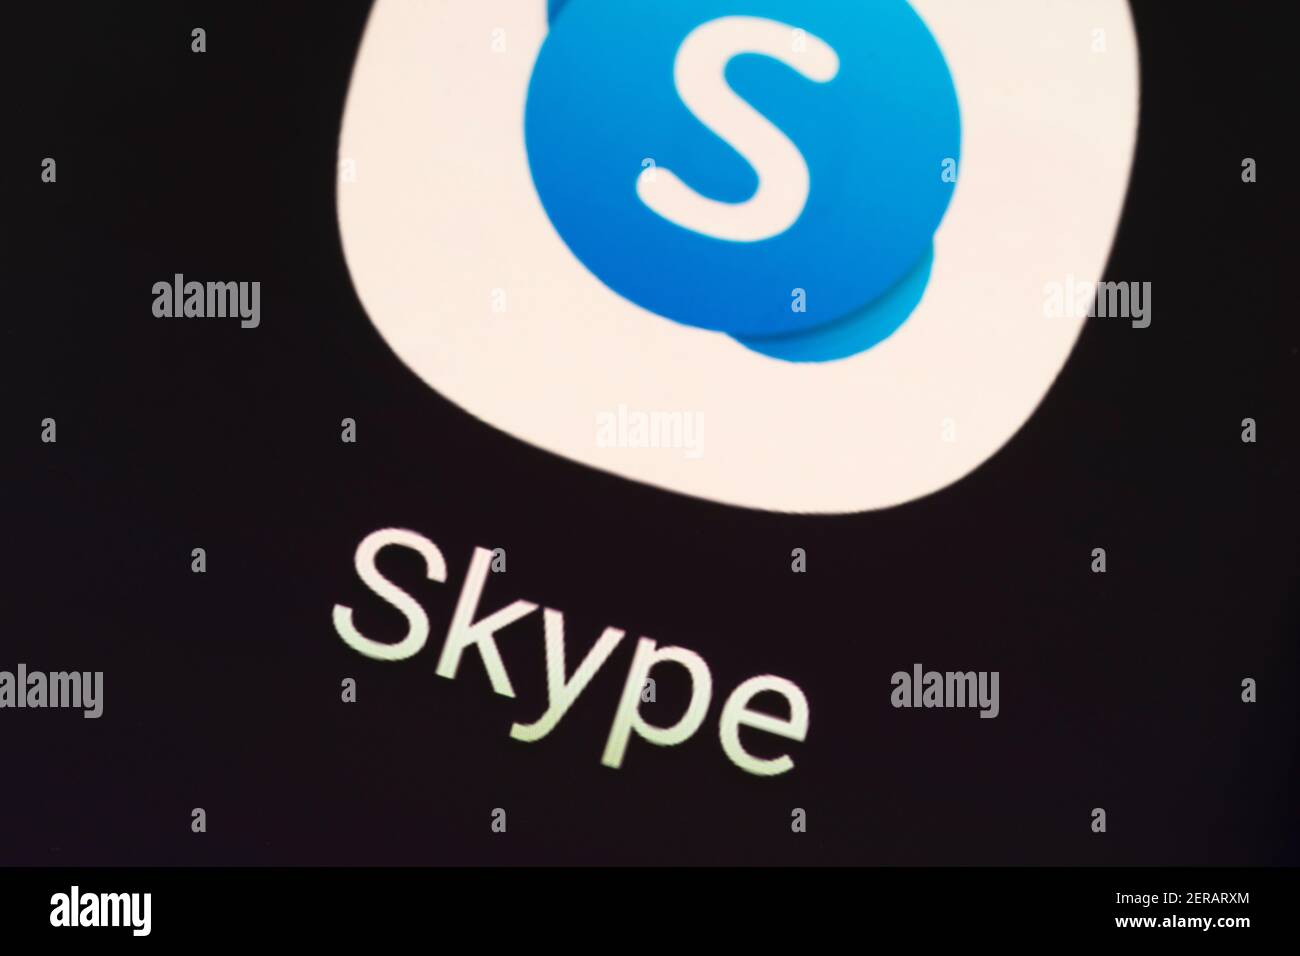 Una macro del logo dell'app Skype. Skype è un'applicazione per le telecomunicazioni specializzata nella videochat e nelle chiamate vocali Foto Stock